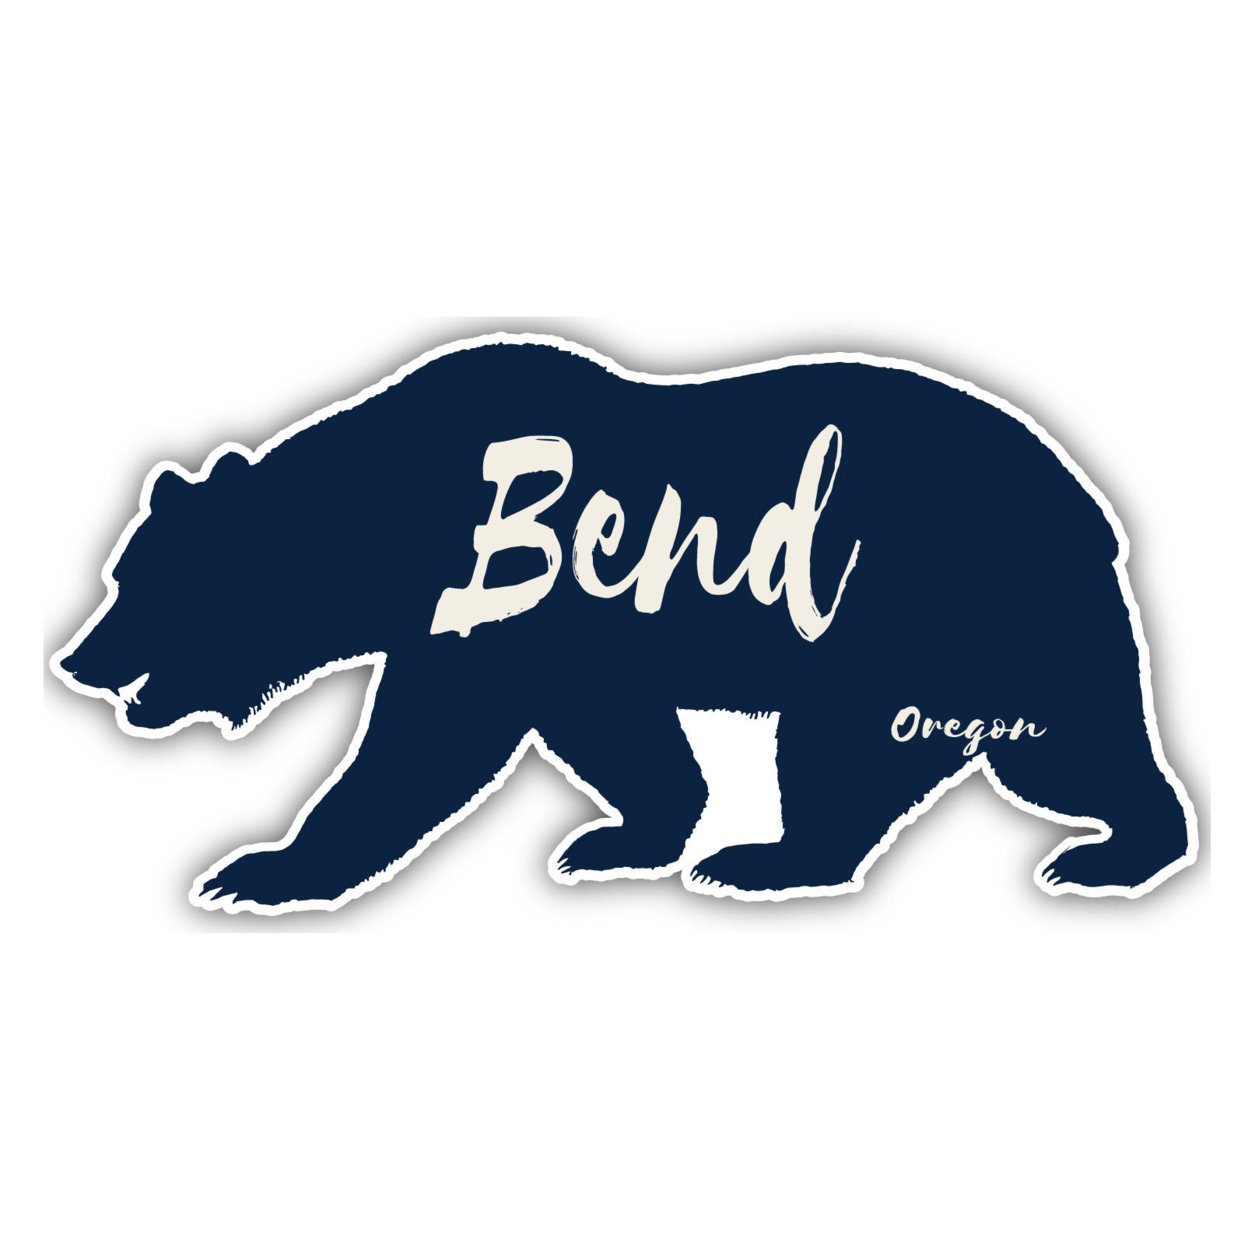 Bend Oregon Souvenir Decorative Stickers (Choose Theme And Size) - Single Unit, 2-Inch, Tent